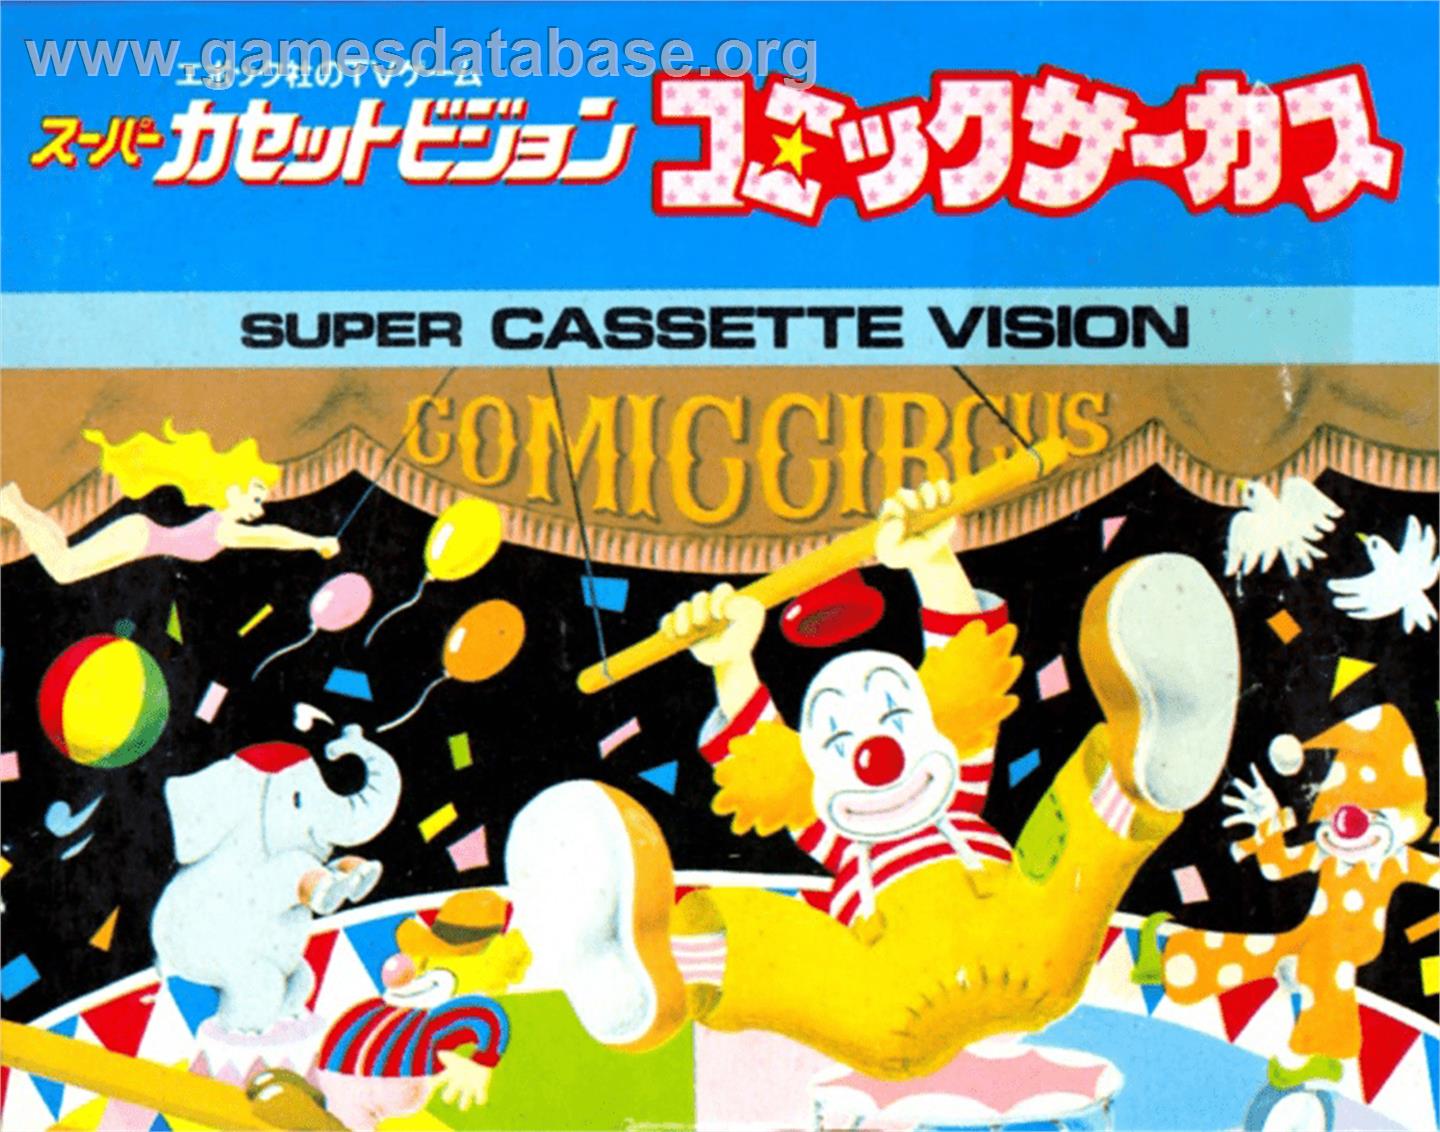 Comic Circus - Epoch Super Cassette Vision - Artwork - Box